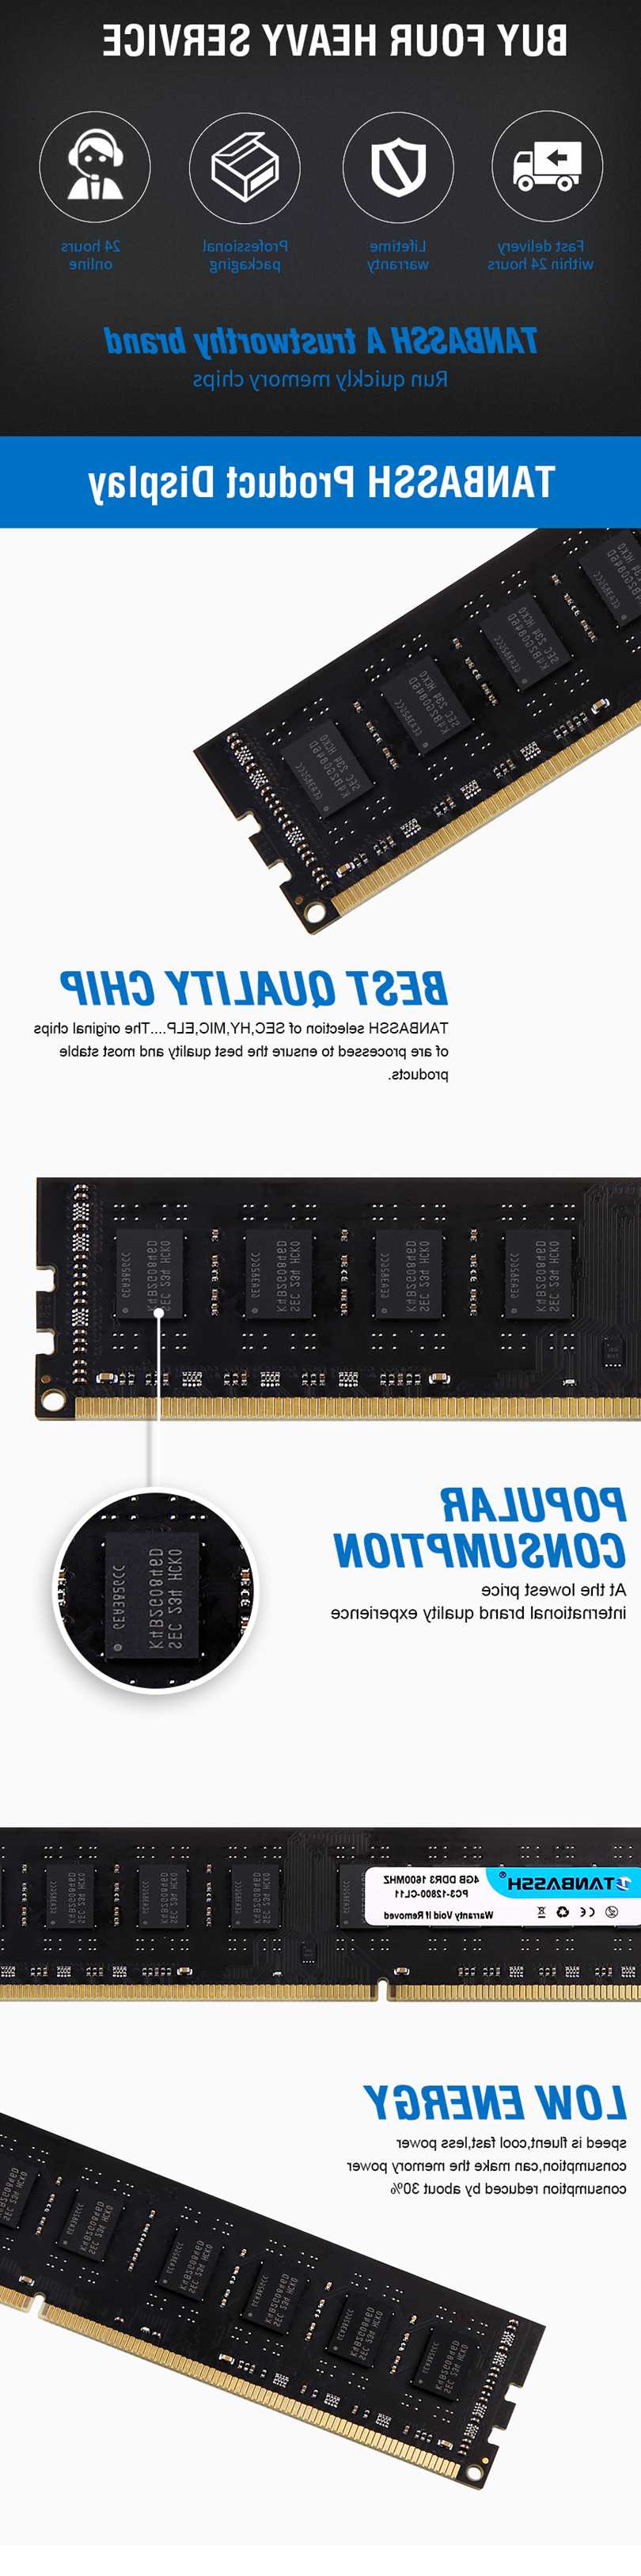 Tanie TANBASSH 4GB 8GB DDR3 1600MHz pamięć stacjonarna RAM kompaty… sklep internetowy